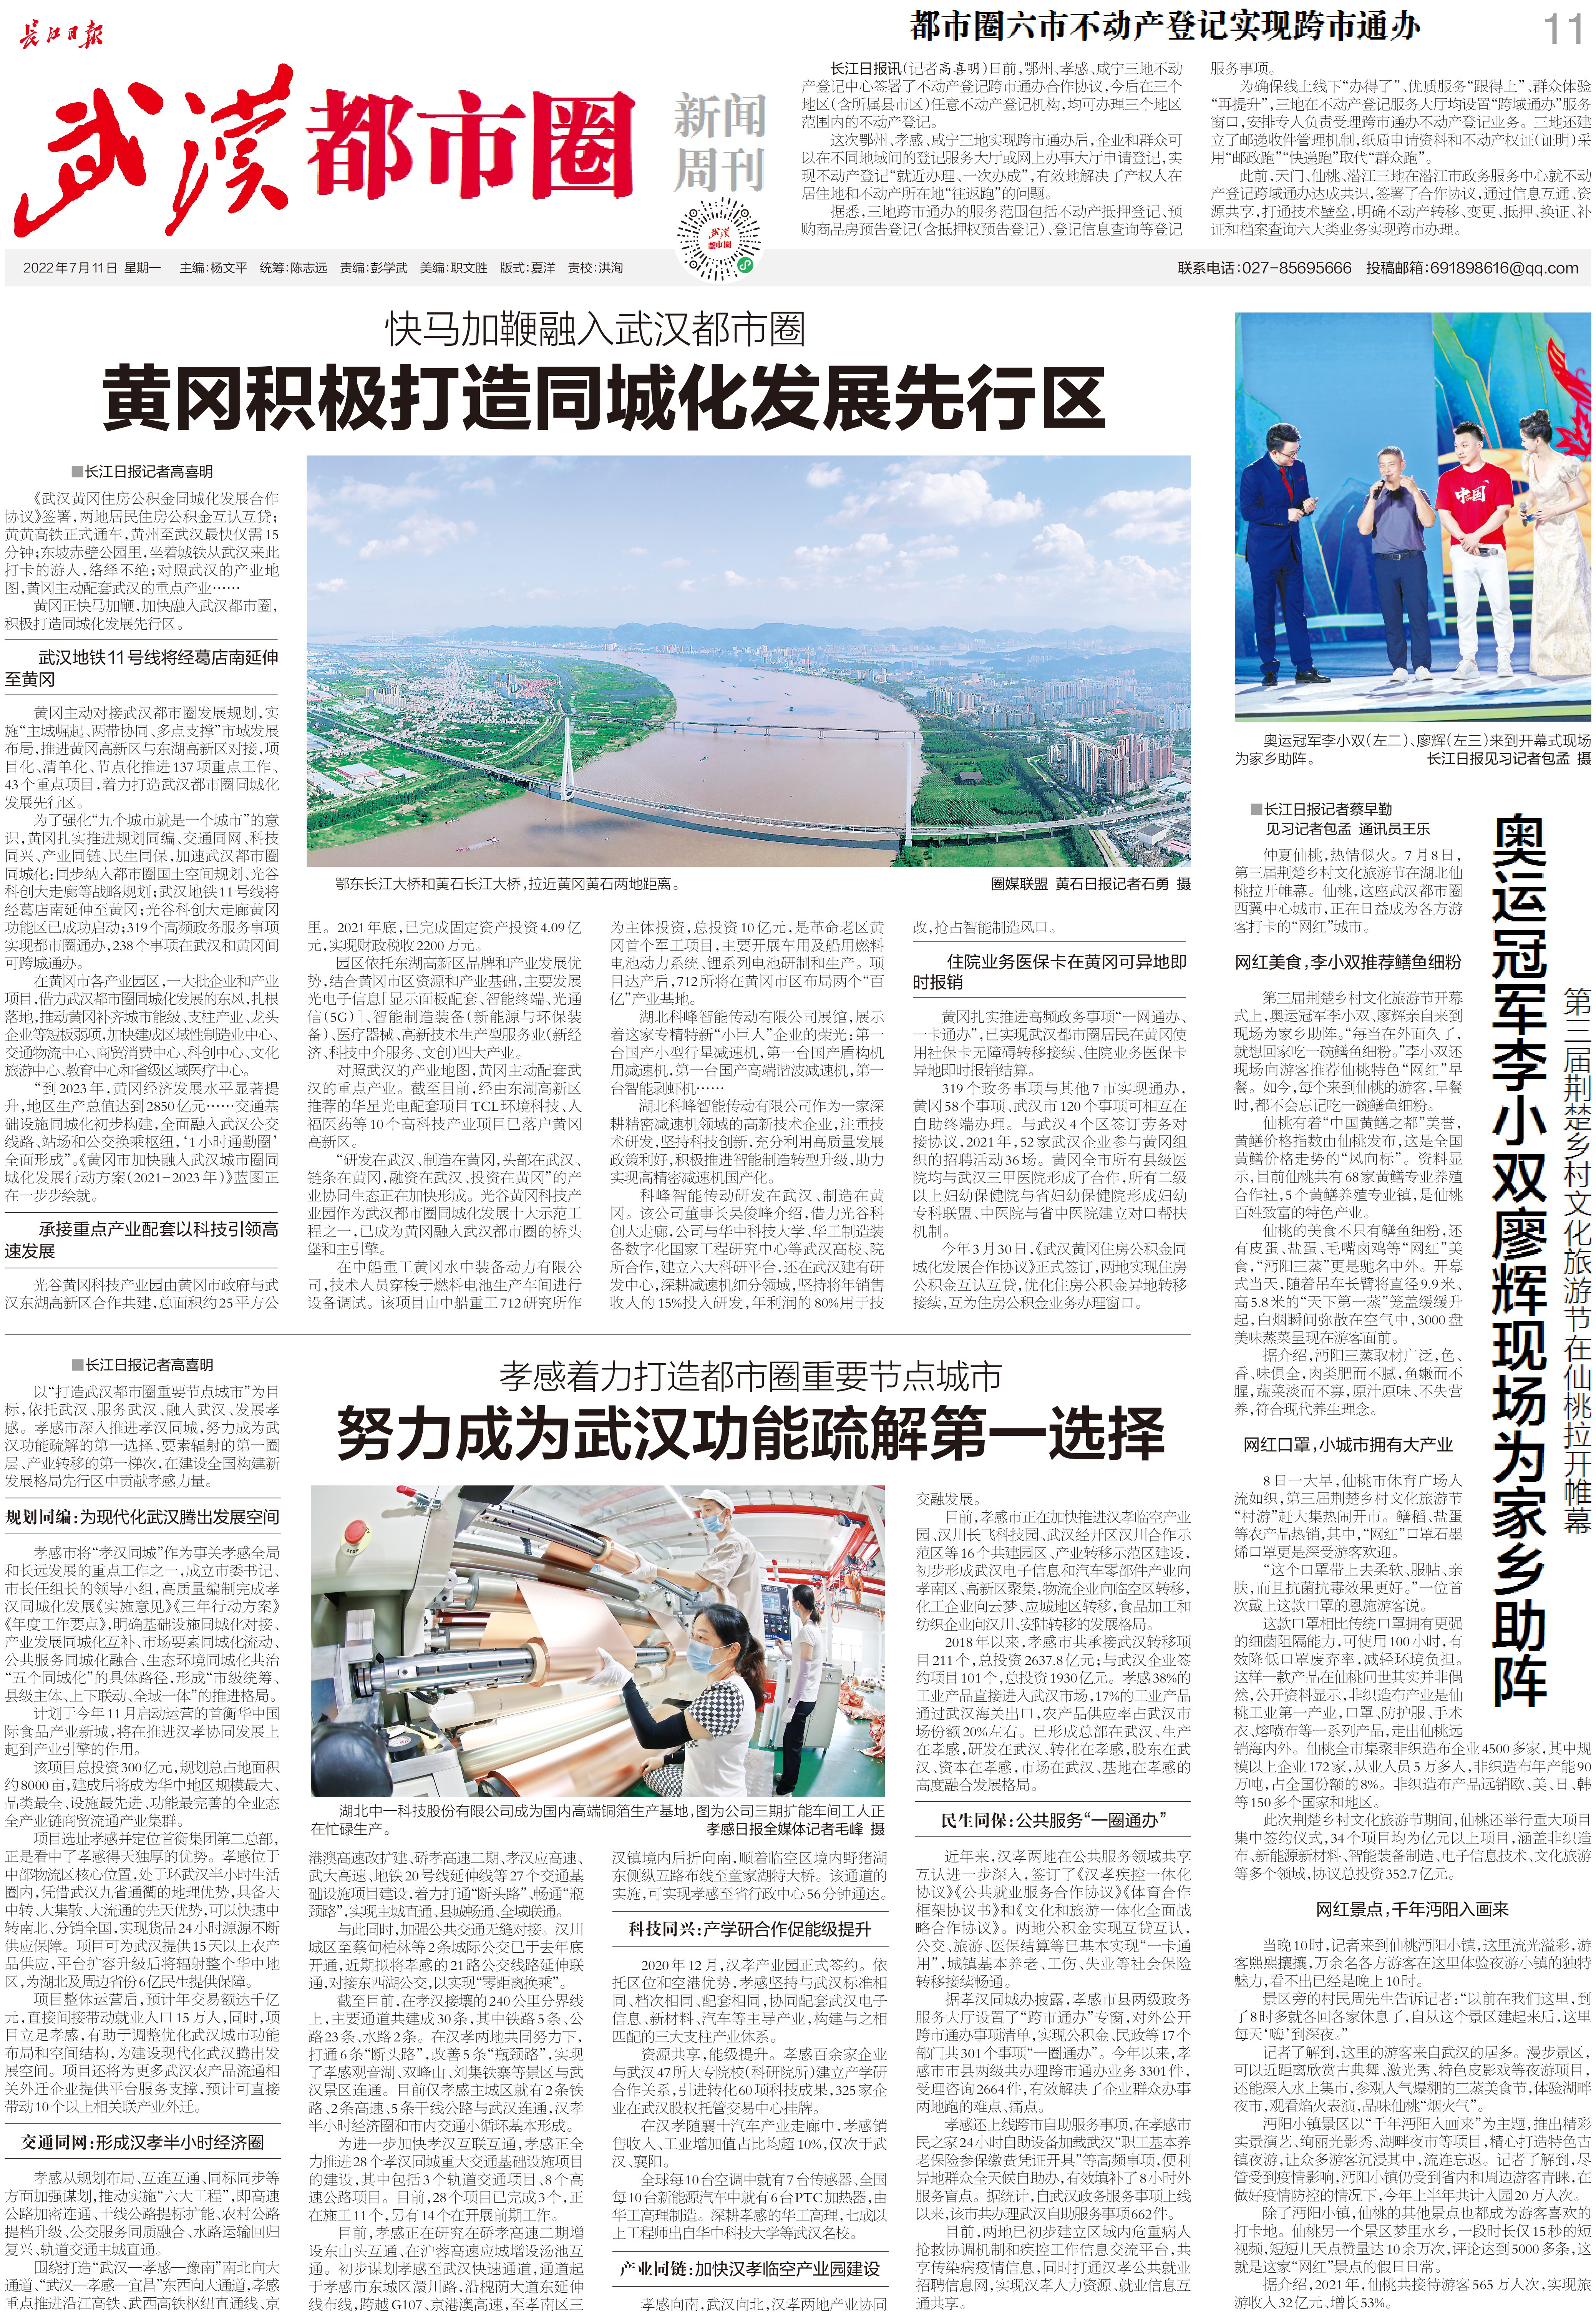 九城同心向未来长江日报武汉都市圈新闻周刊2022年7月11日第21期报纸